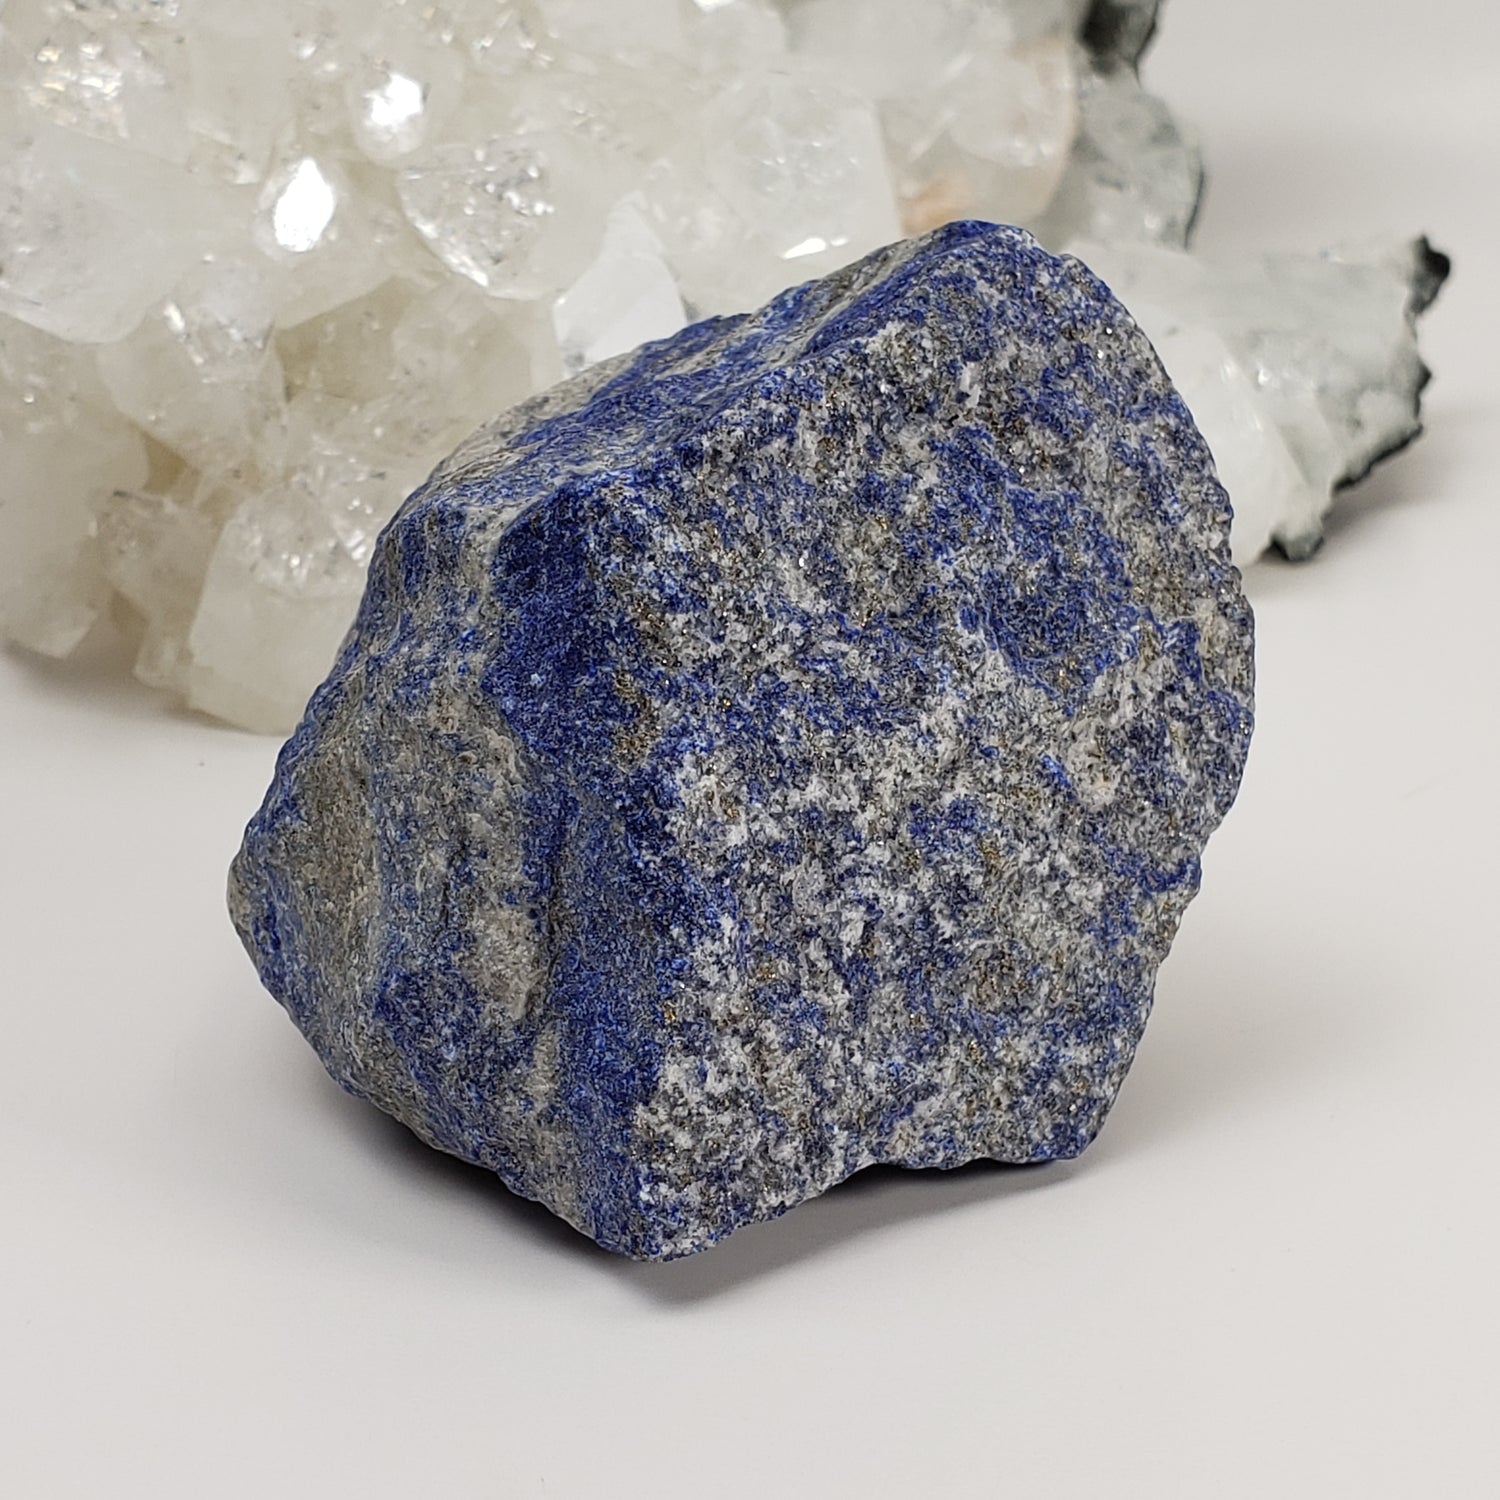 Lapis-lazuli brut | Bleu profond | 344 grammes | Afghanistan